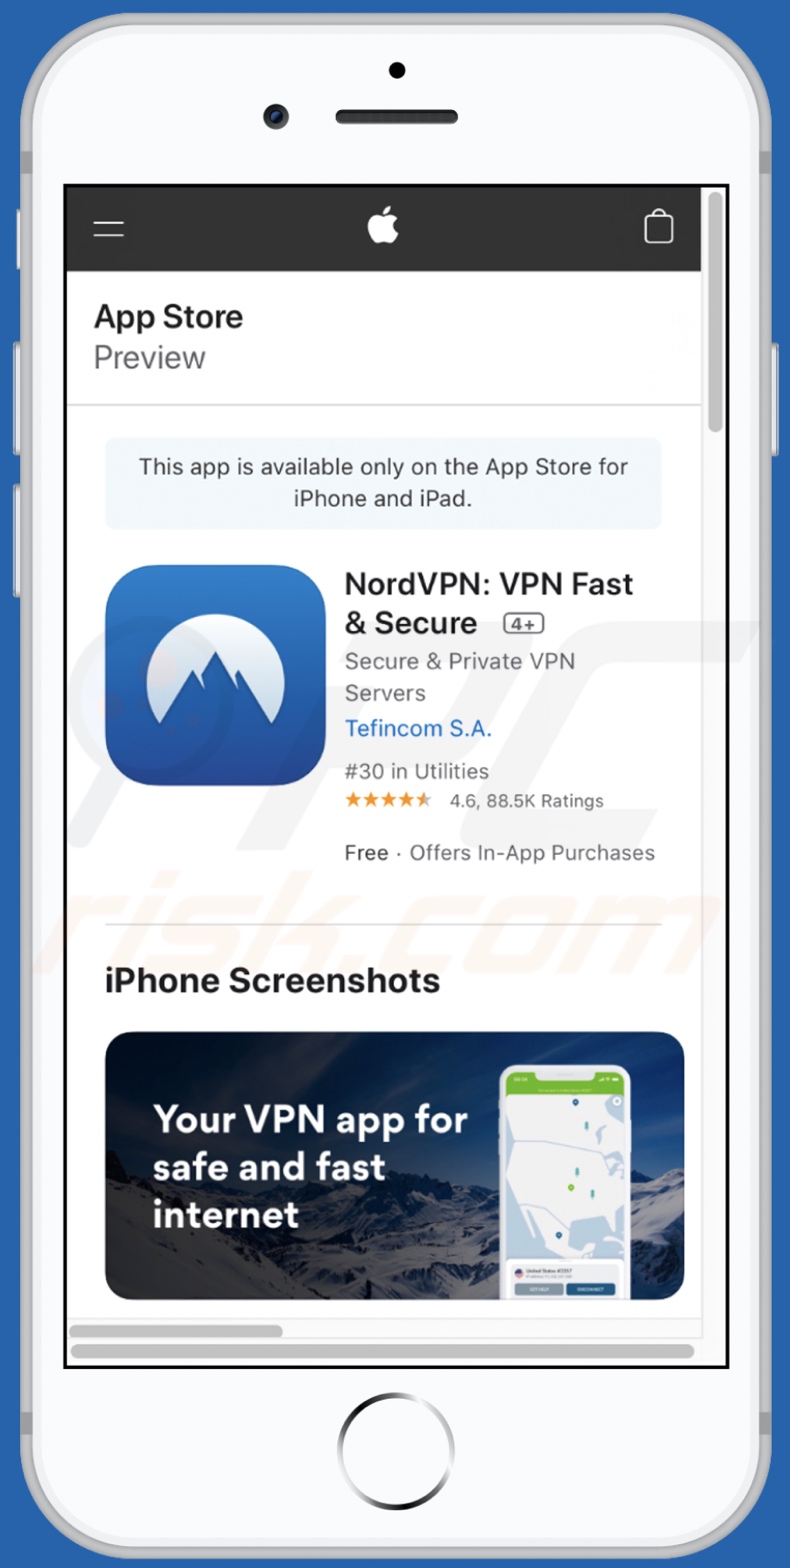 IOS VPN profile Aspetto della pagina web promozionale dell'app dubbia sui dispositivi mobili